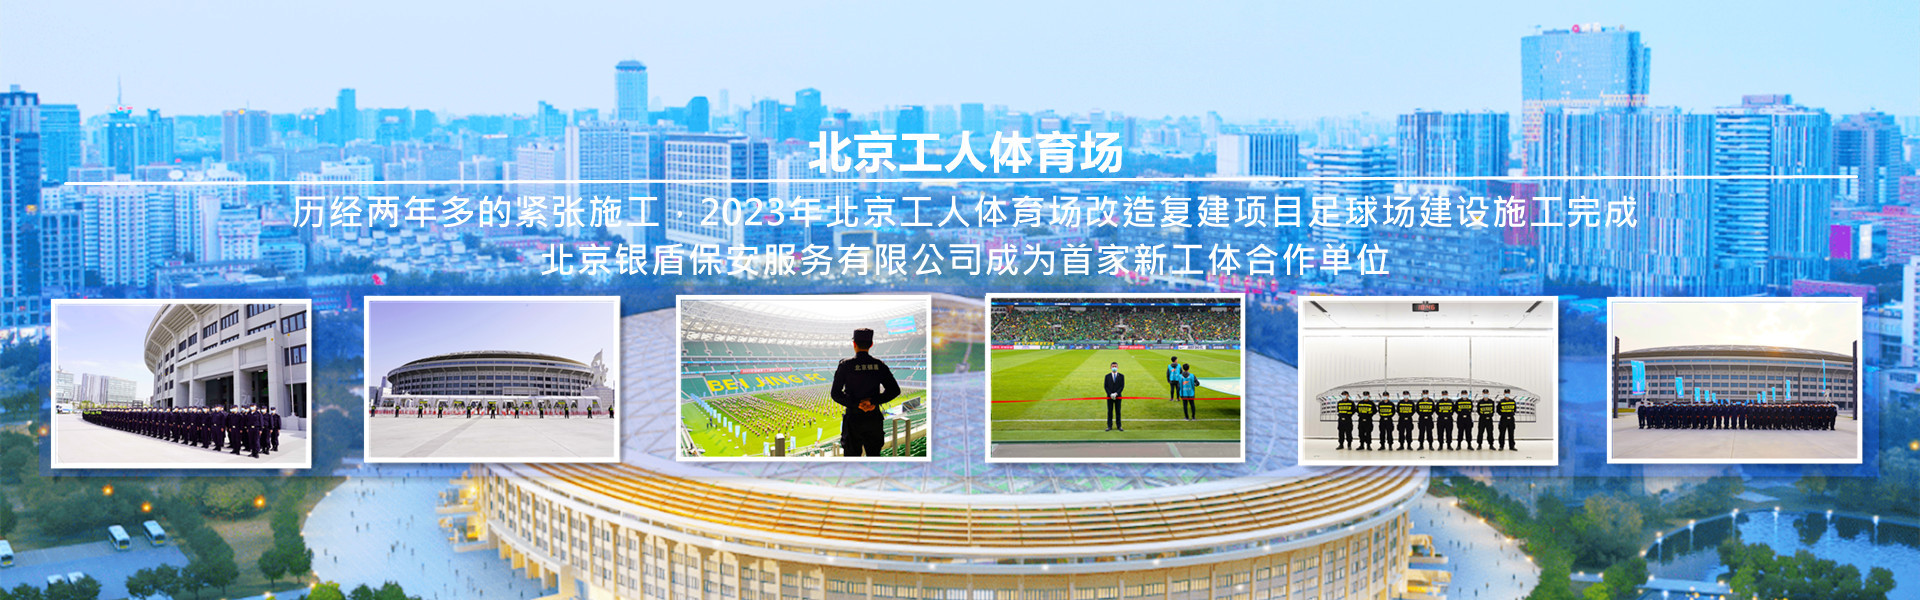 大红鹰dhy7788为北京工人体育场提供安全守卫